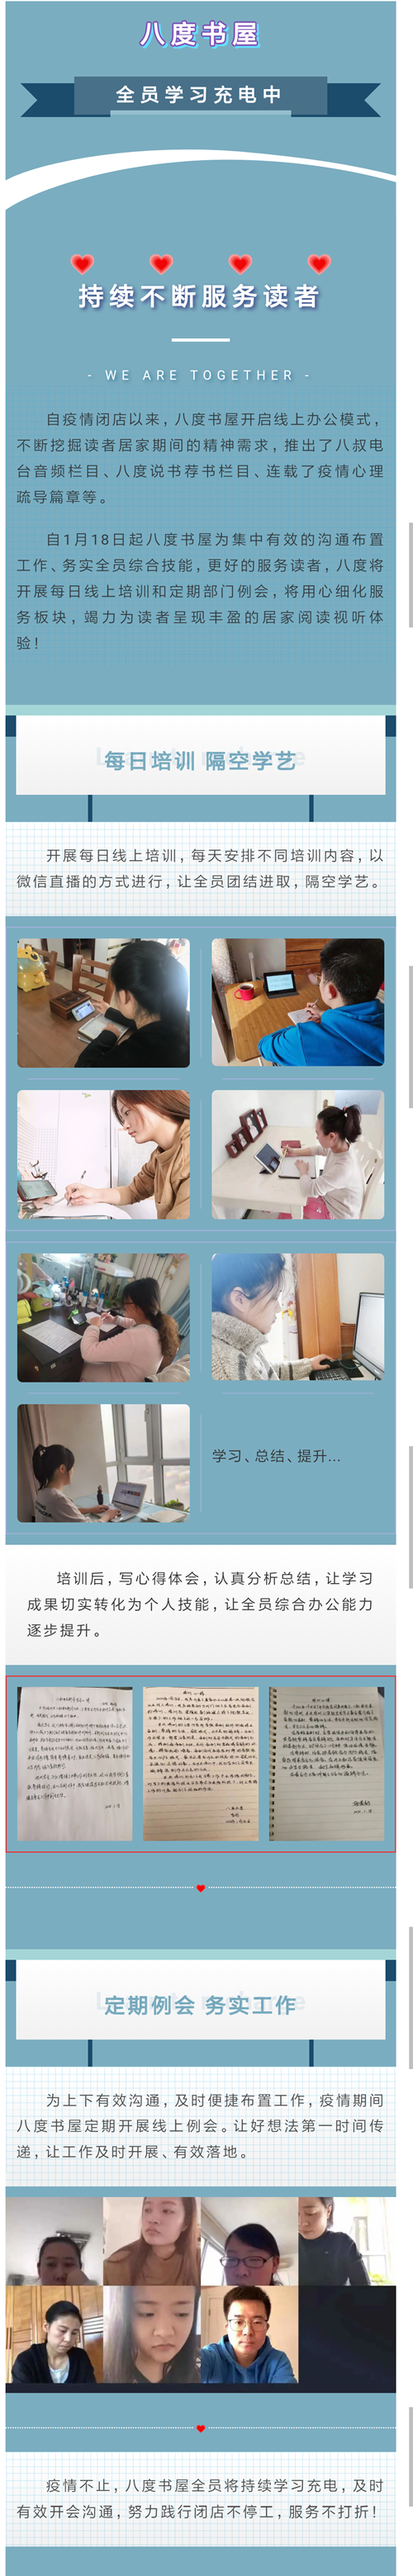 Screenshot_2021-03-29-15-14-14-530_com.tencent.mm_副本.png